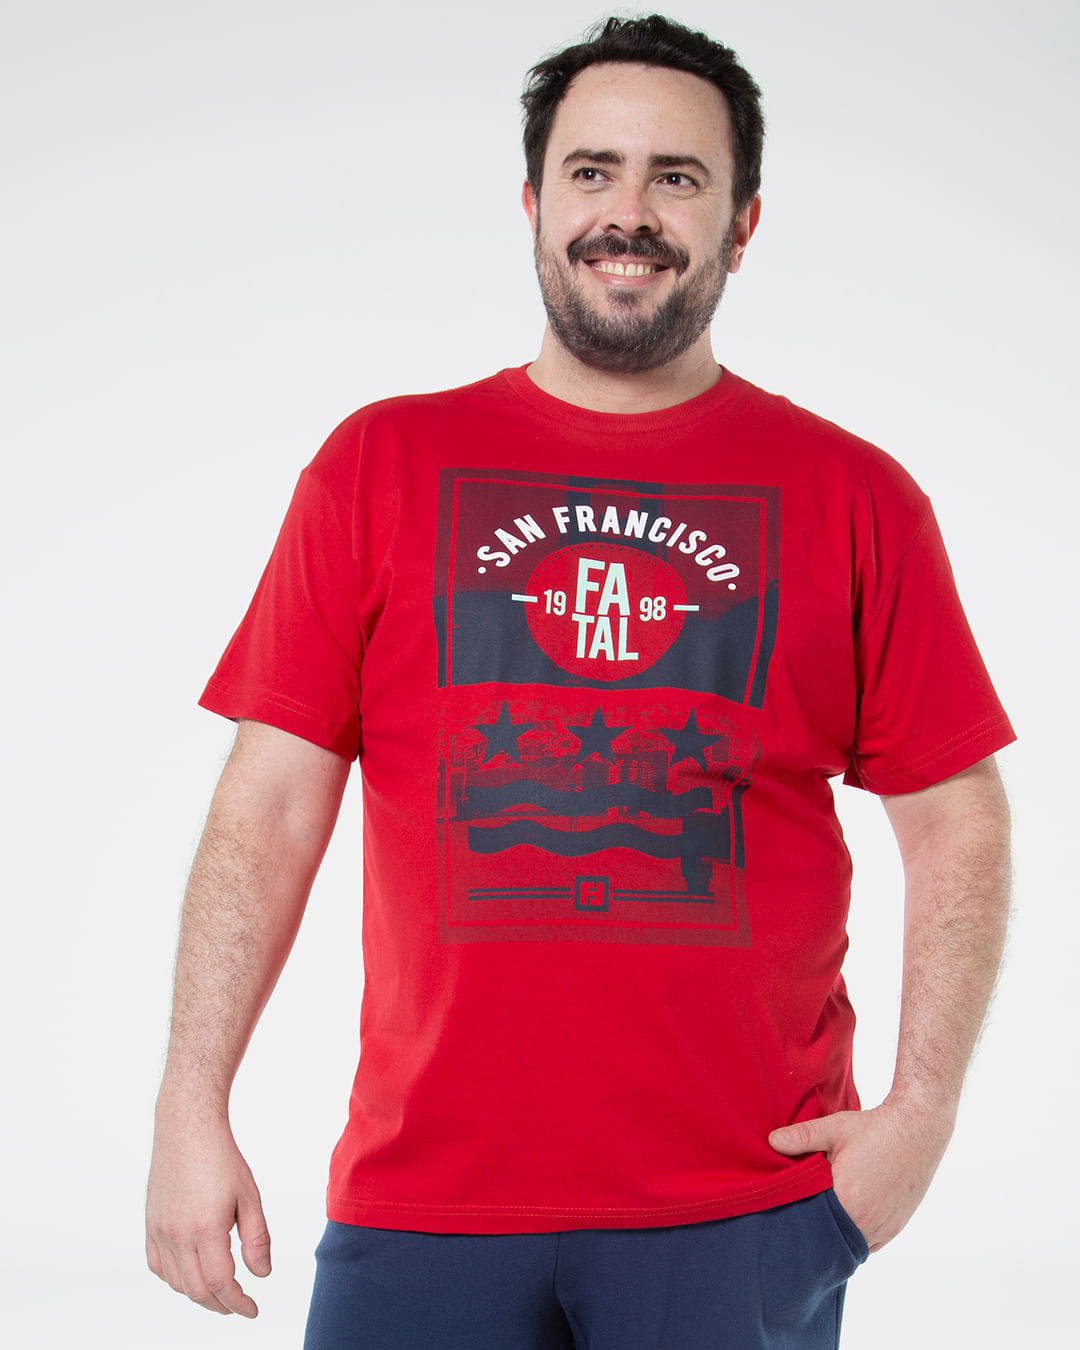 Camiseta-Masculina-Plus-Size-Estampada-San-Francisco-Fatal-Vermelha